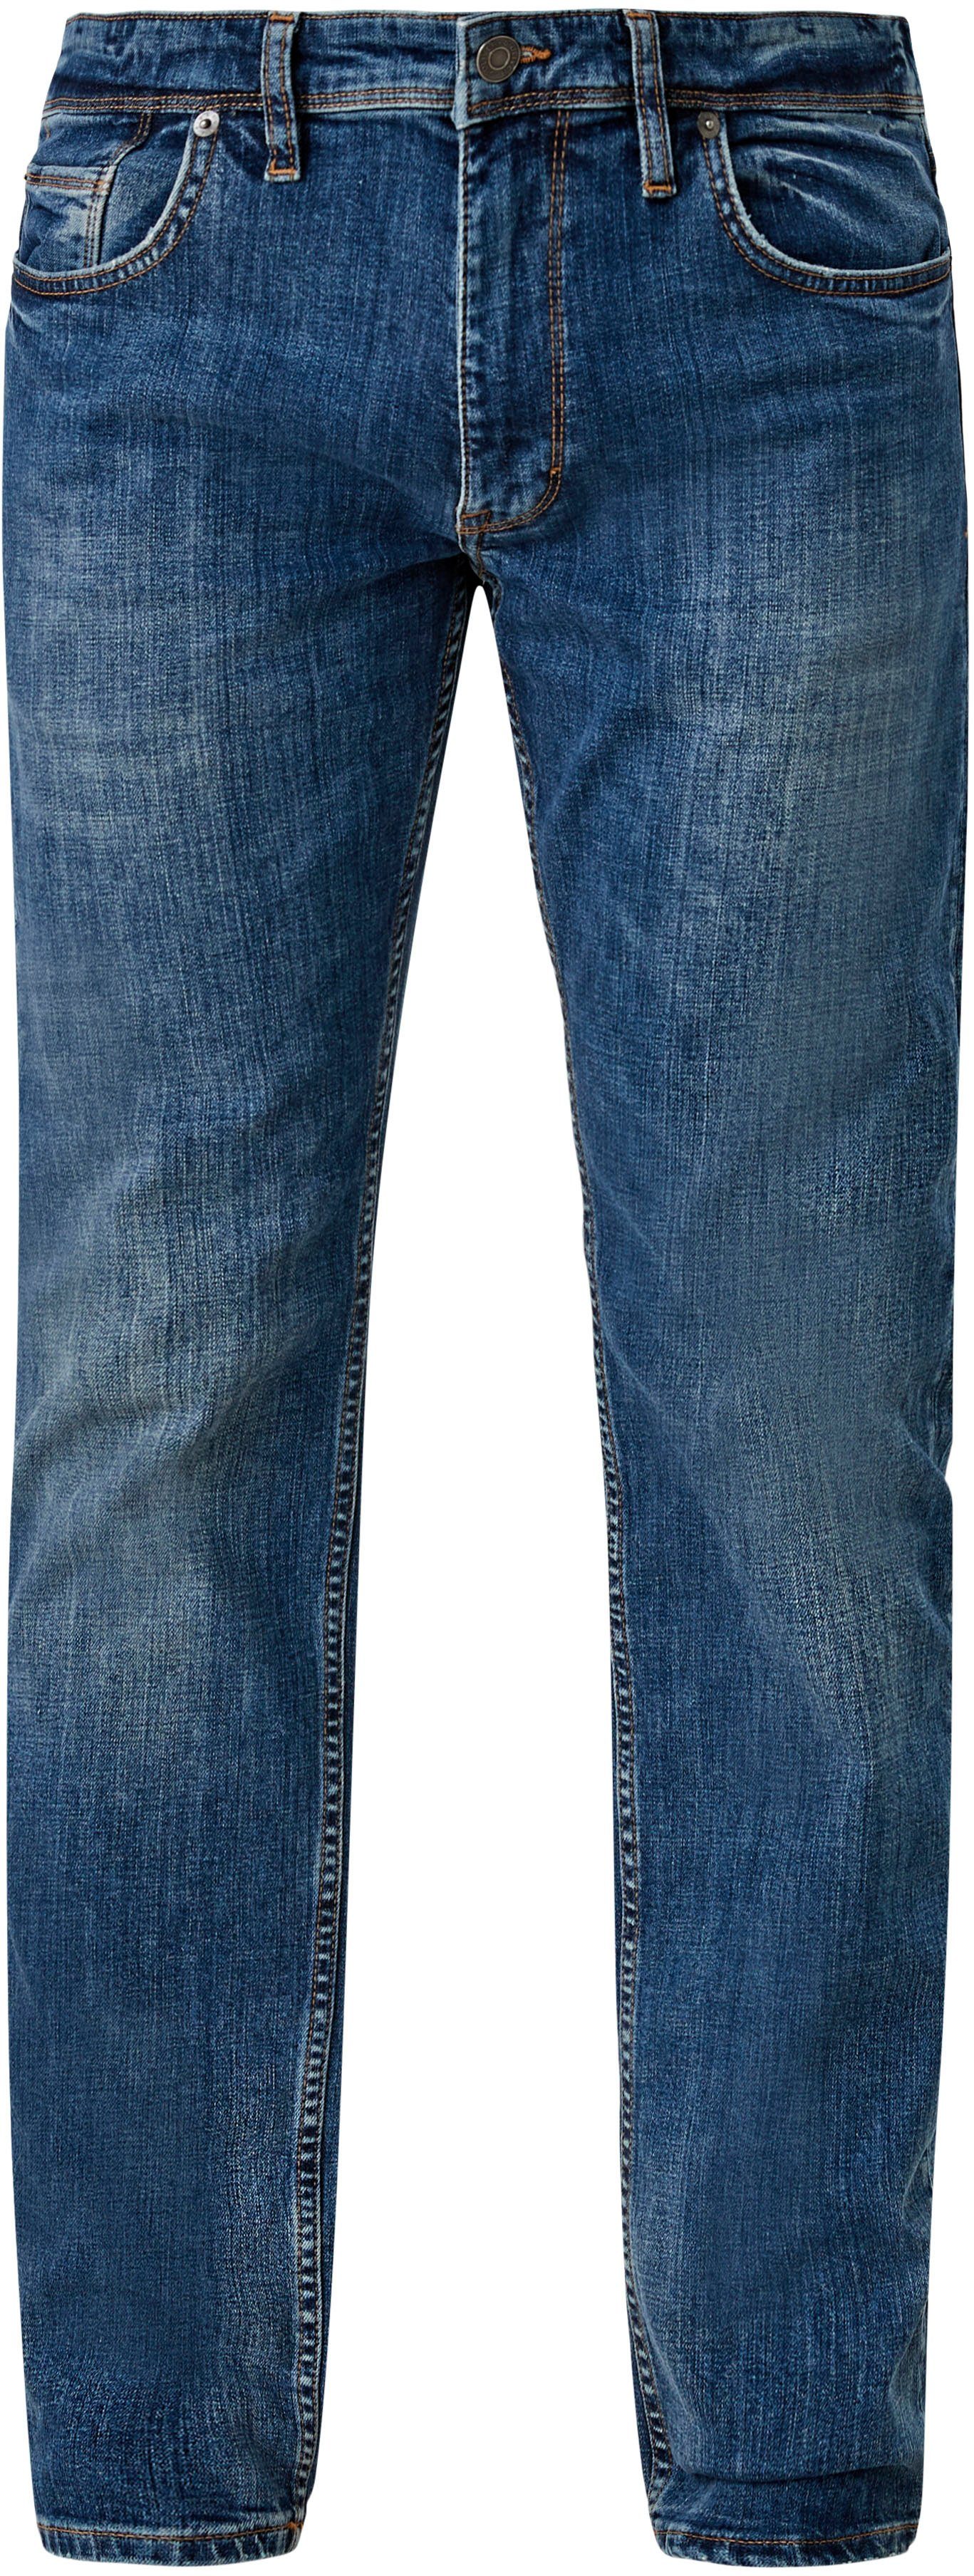 s.Oliver 5-Pocket-Jeans mit authentischer ozeanblau Waschung